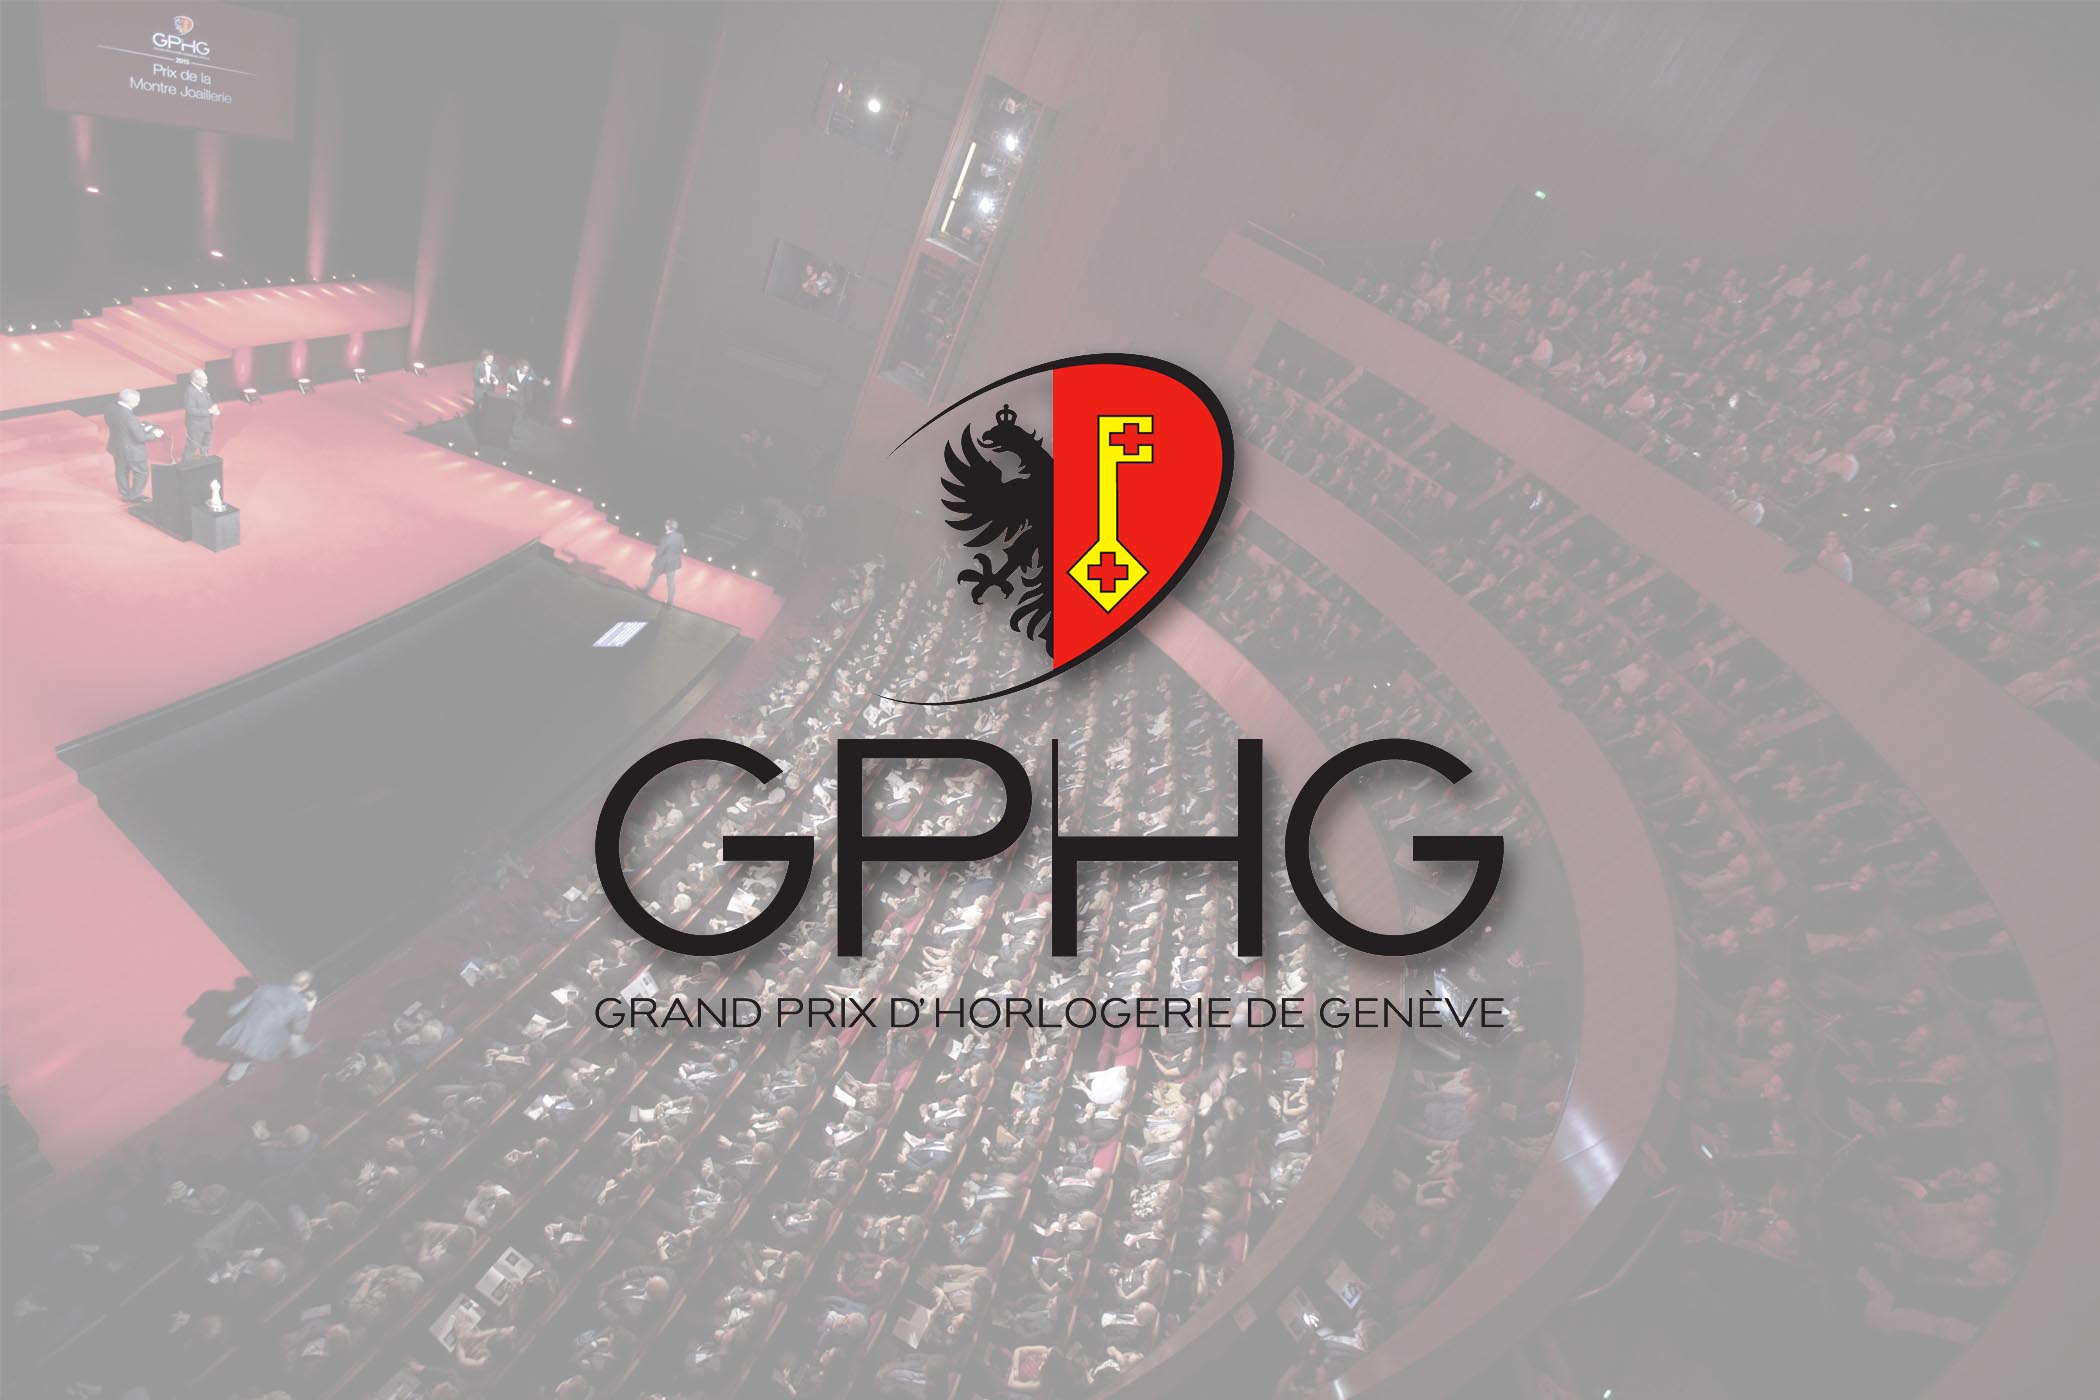 Điểm qua những ứng viên xuất sắc trong danh sách đề cử giải thưởng GPHG 2020